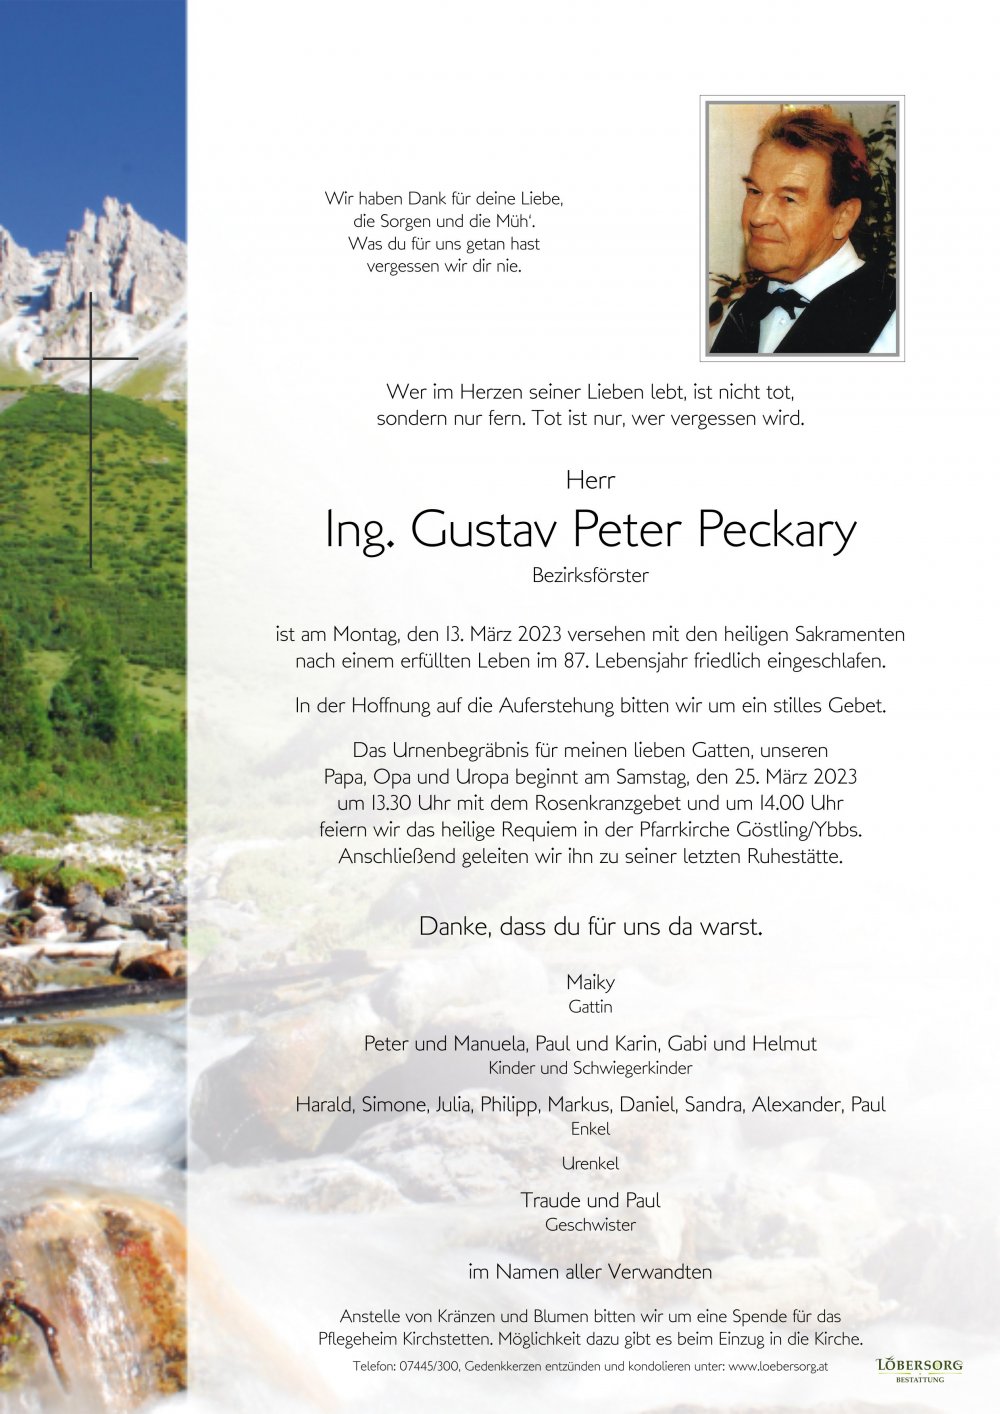 Parte von Ing. Gustav Peter Peckary